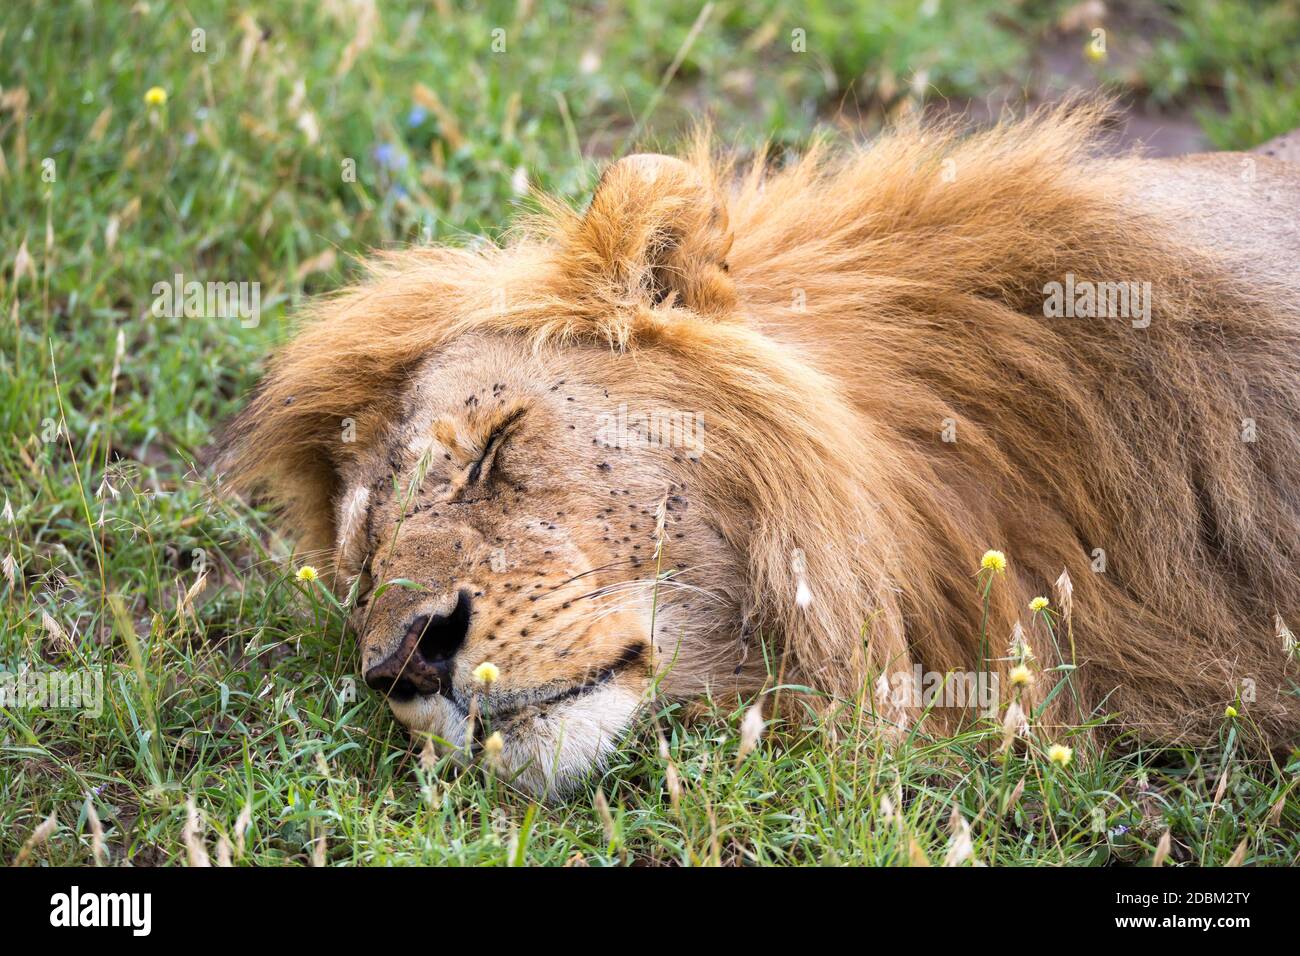 Un grand lion dort dans l'herbe de la savane kenyane Banque D'Images